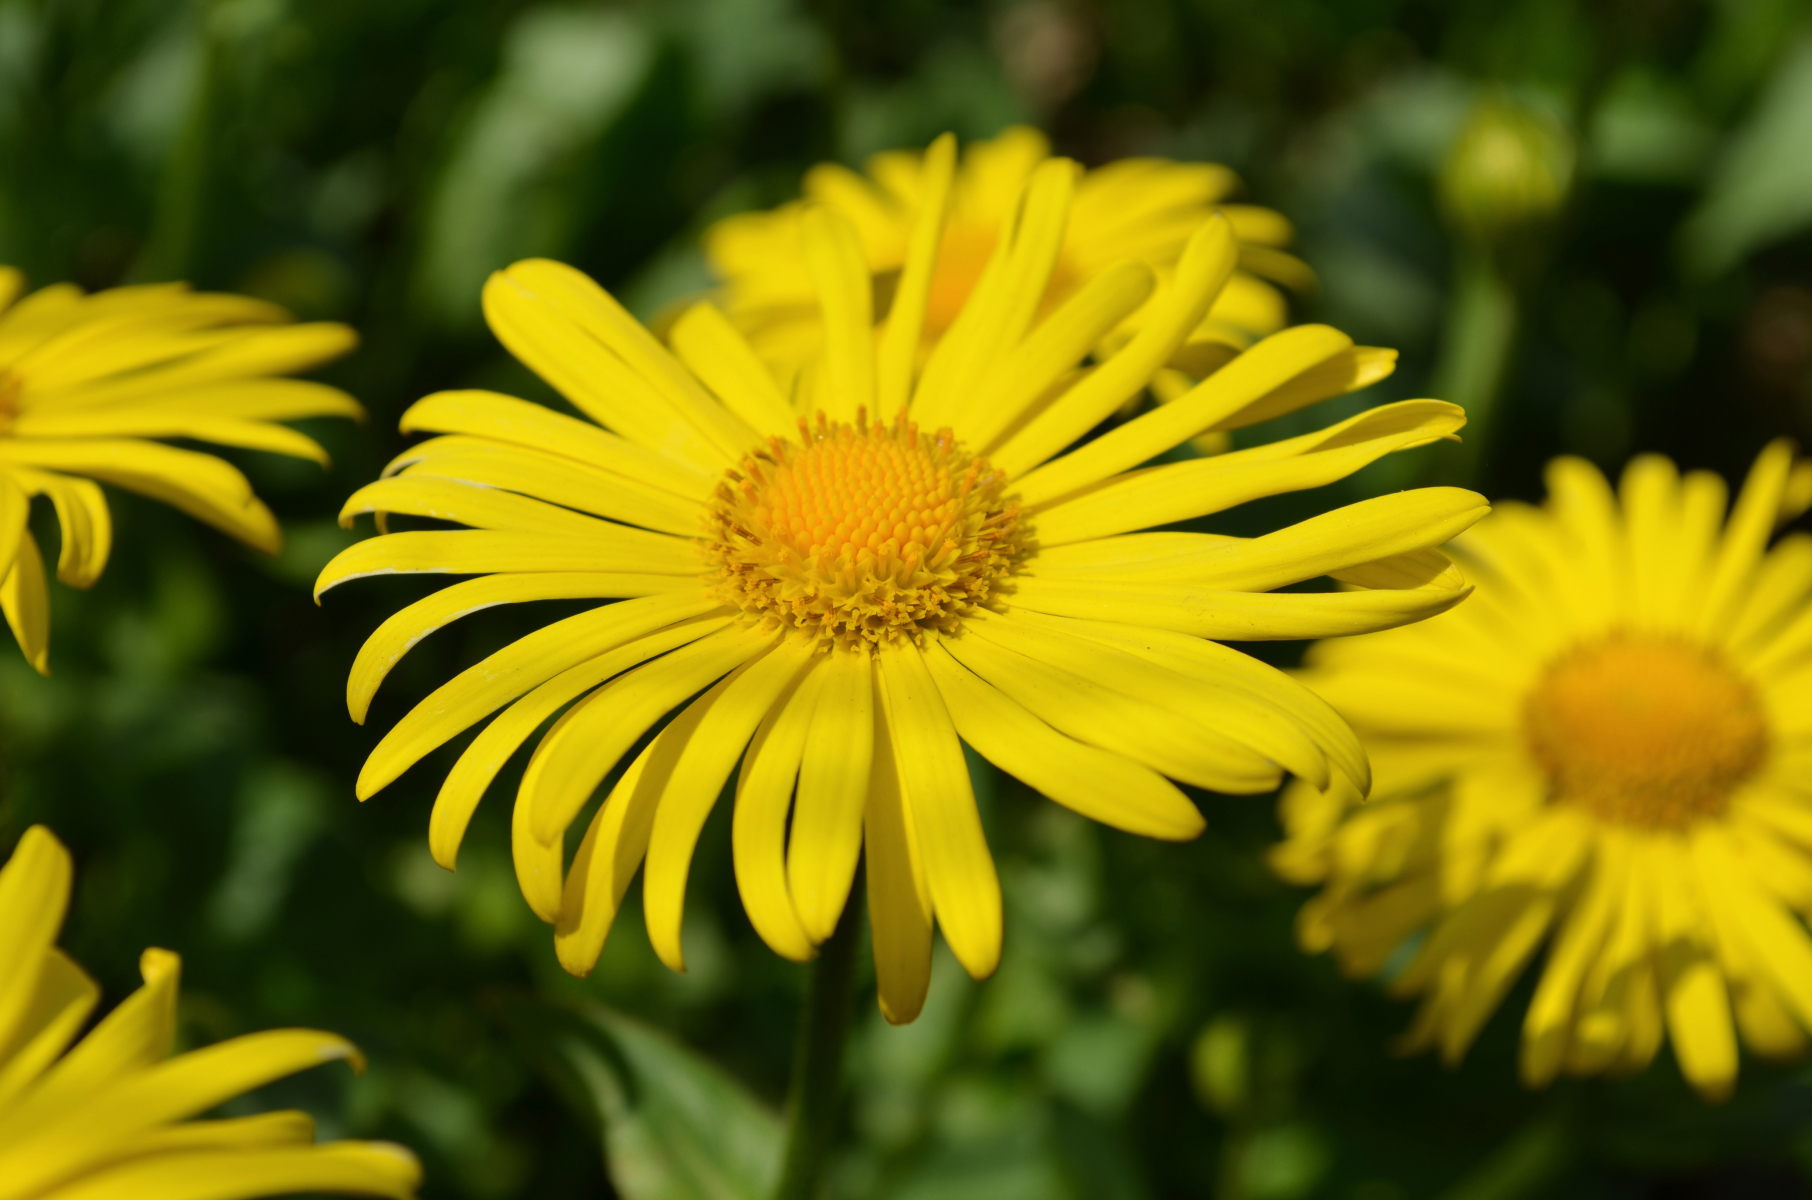 Blomst med gule, tynne kronblad, ligner på prestekrage 